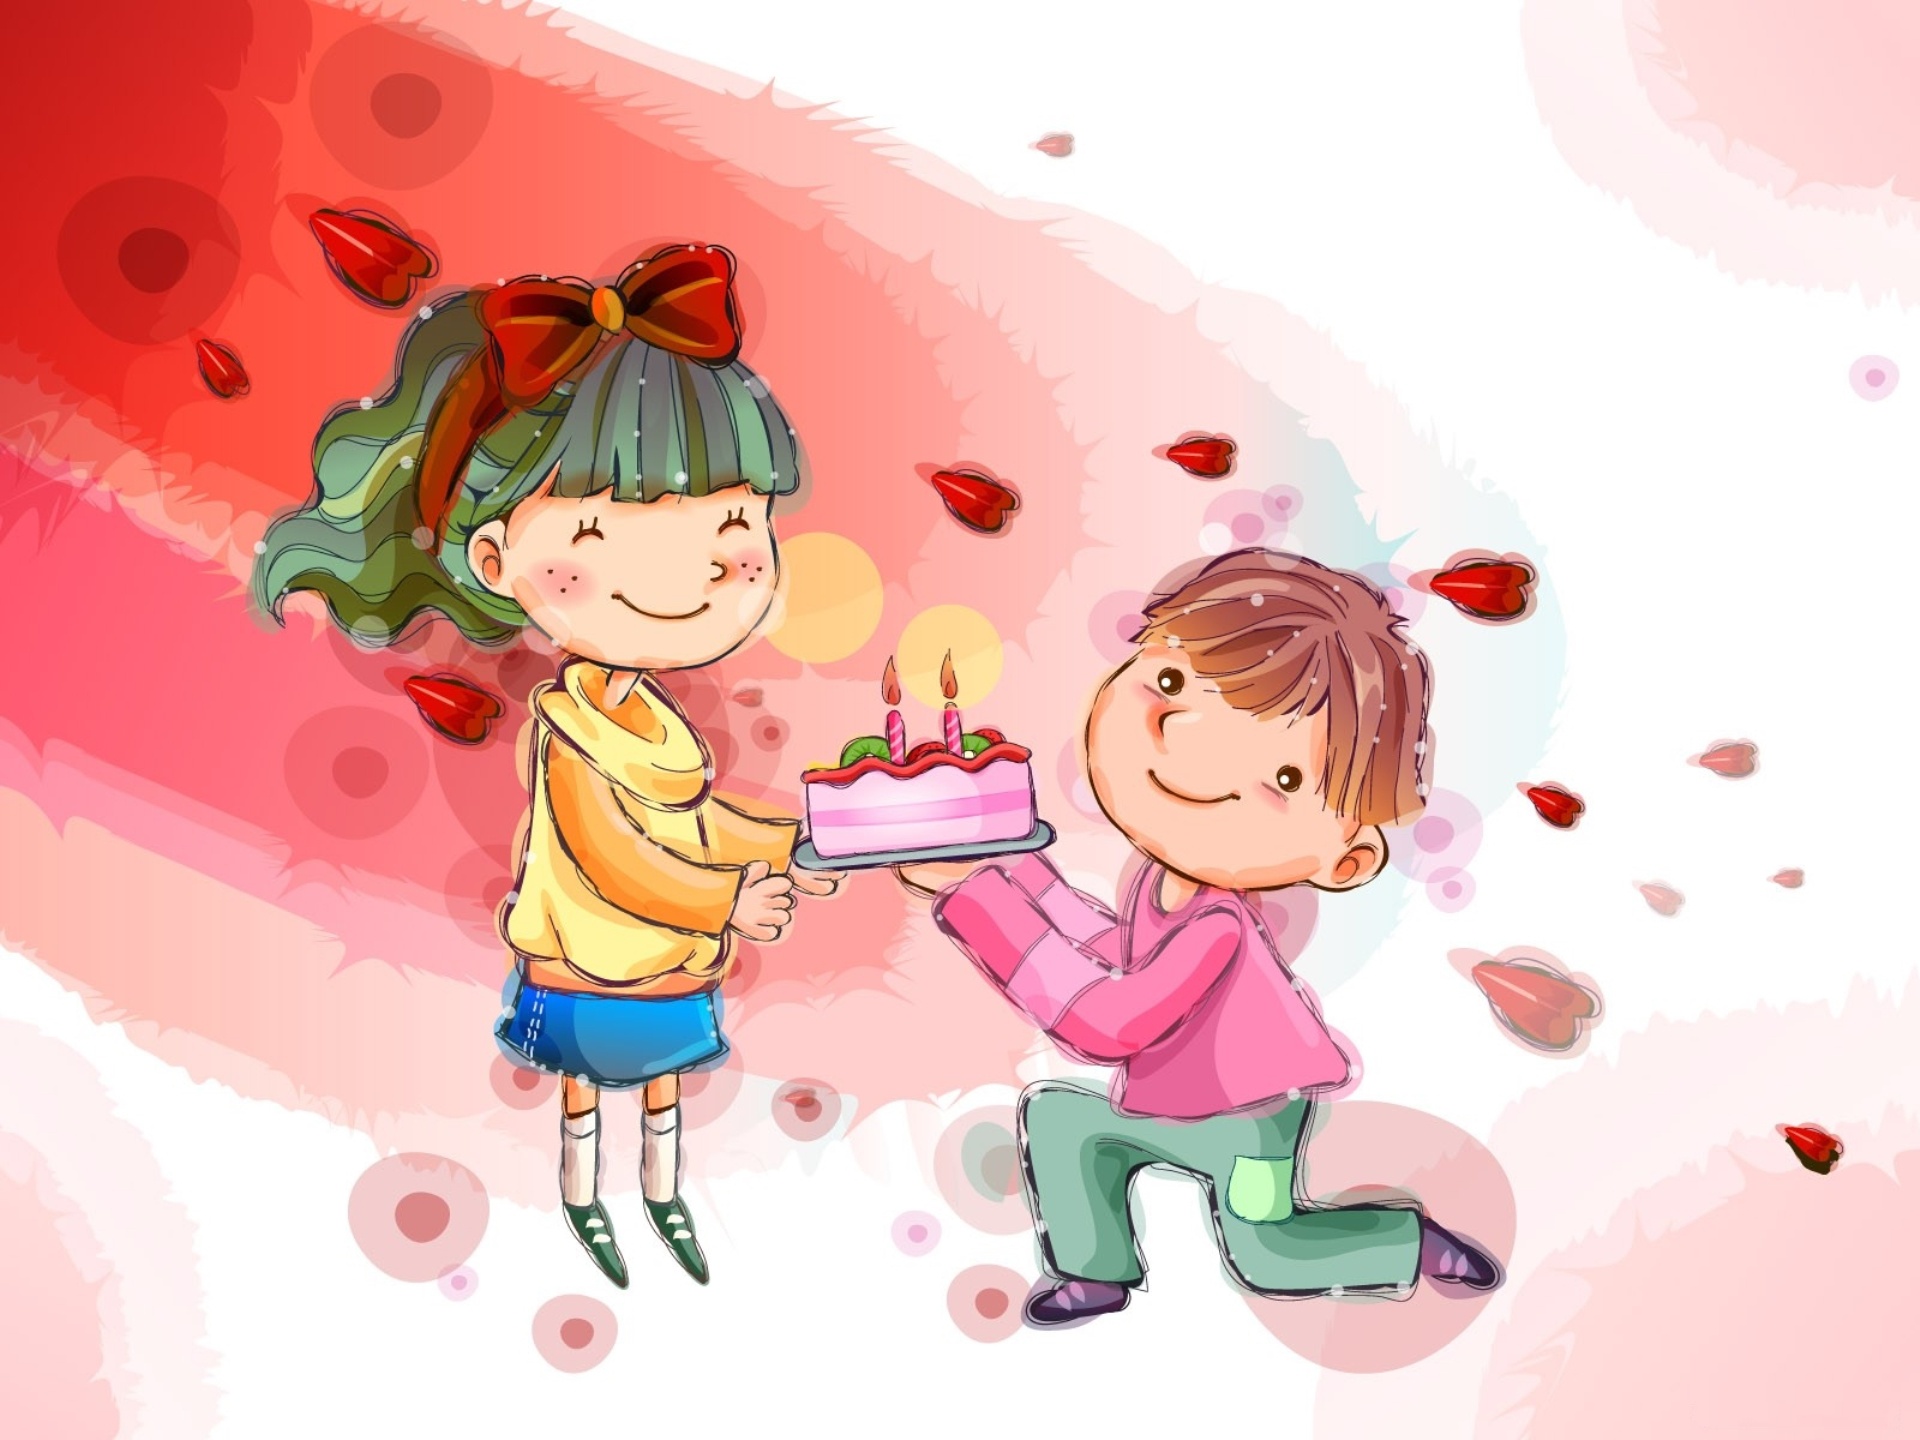 Мальчики поздравили девочек с праздником. День влюбленных иллюстрация. День влюбленных для детей. Детские иллюстрации. Валентинов день для детей.